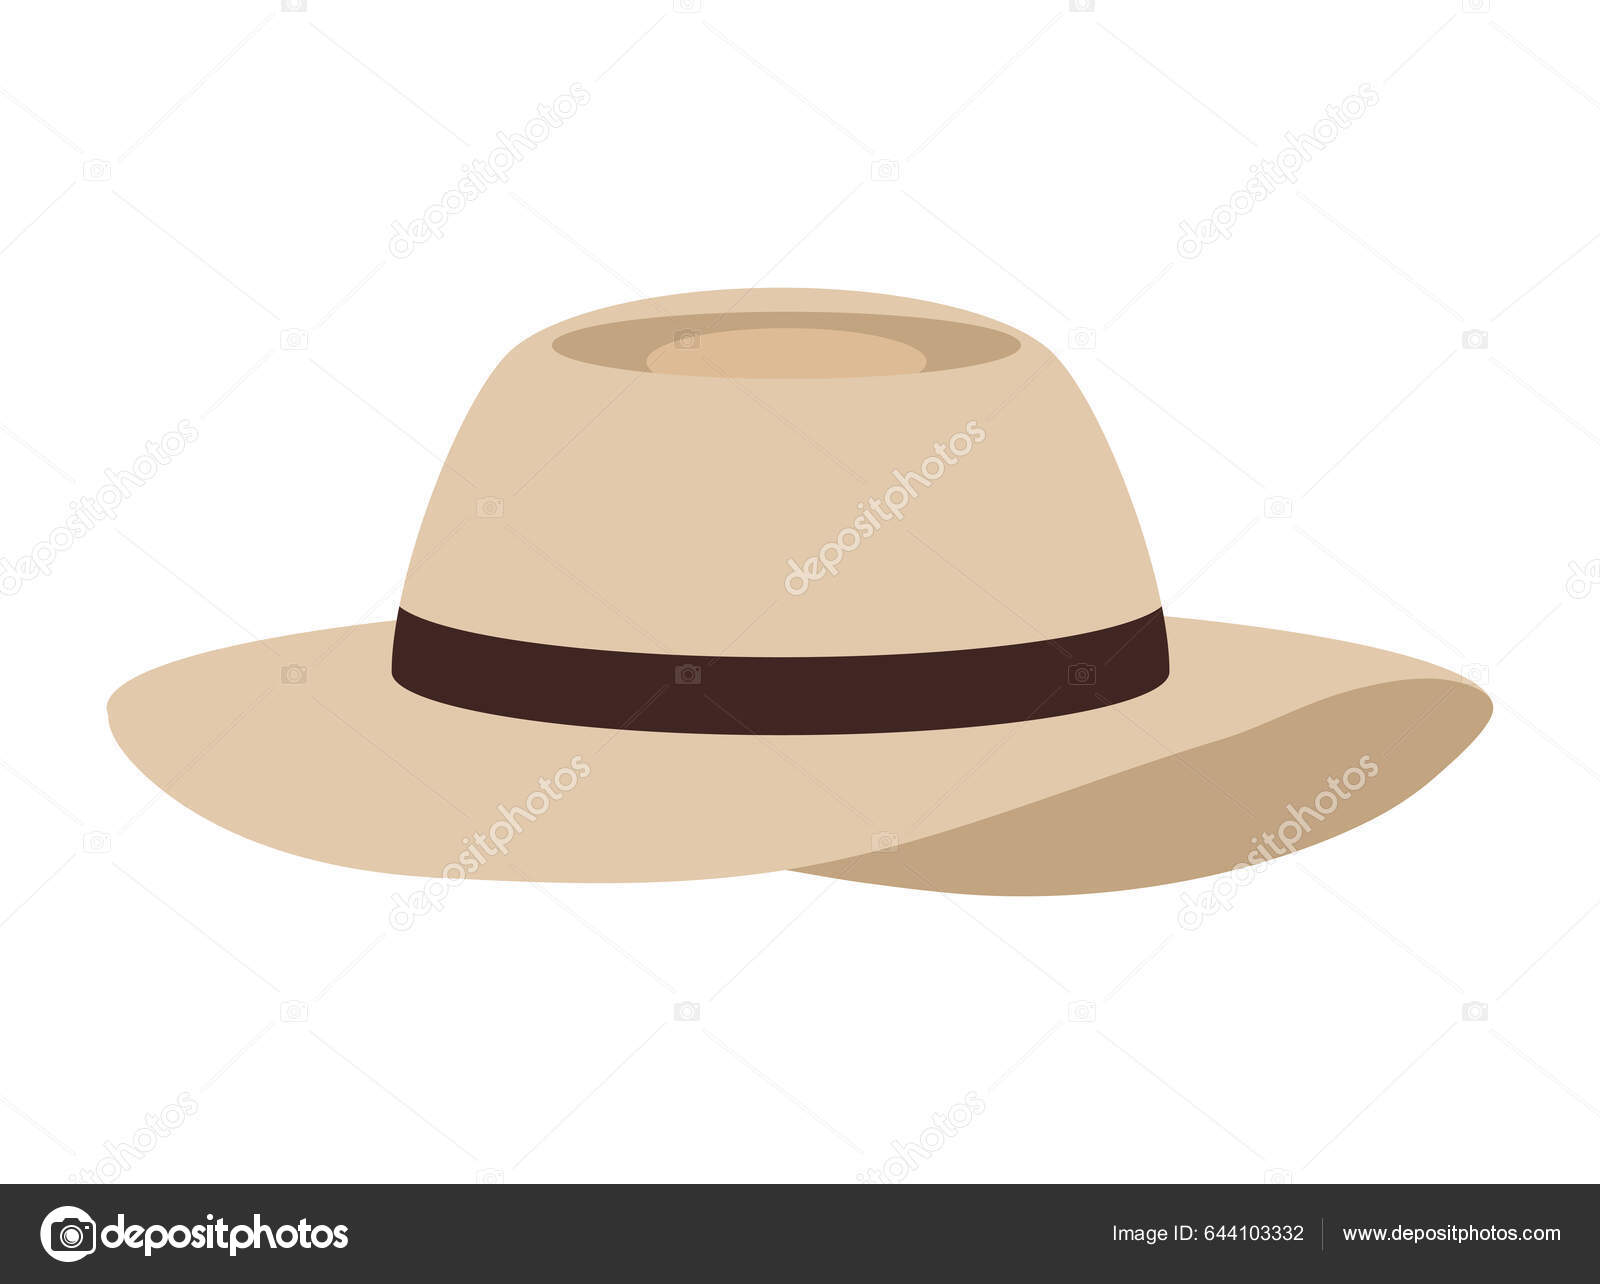 Turist Şapkası Aksesuar Seyahat Simgesi ©jemastock 644103332'e ait Stok  Vektör